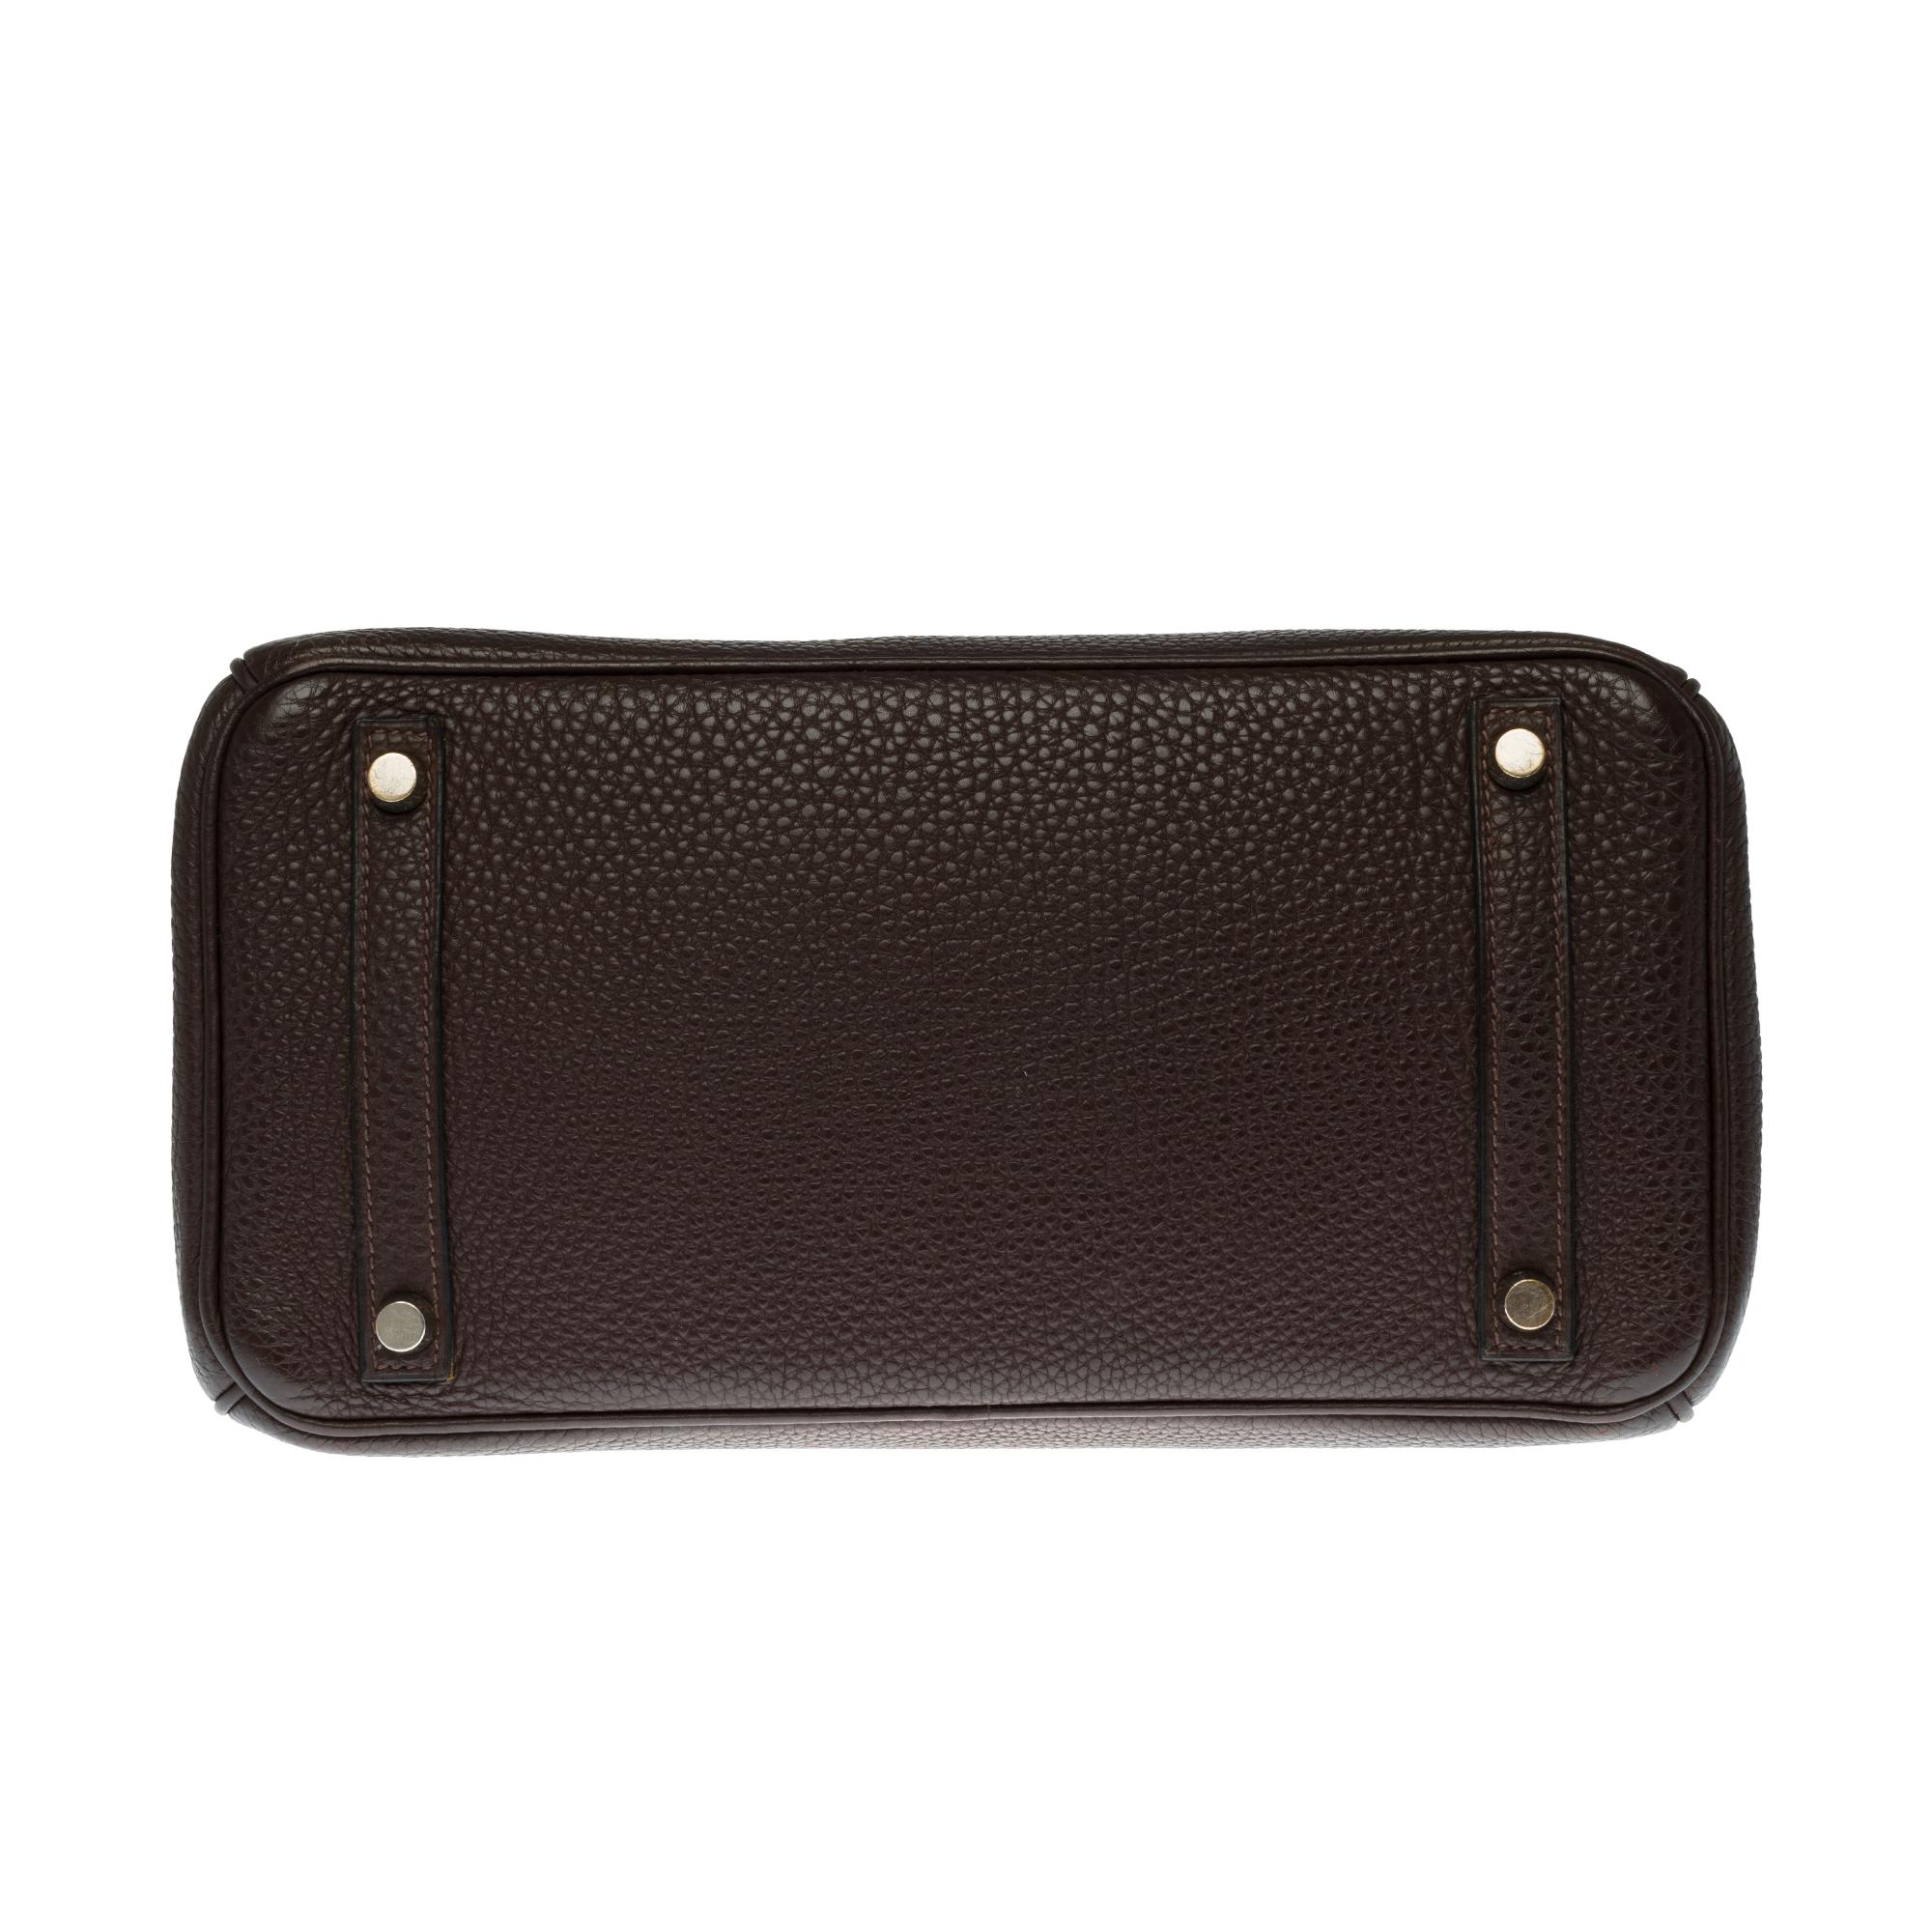 Hermès Birkin 30 handbag in Brown Togo leather, silver Palladium hardware 3